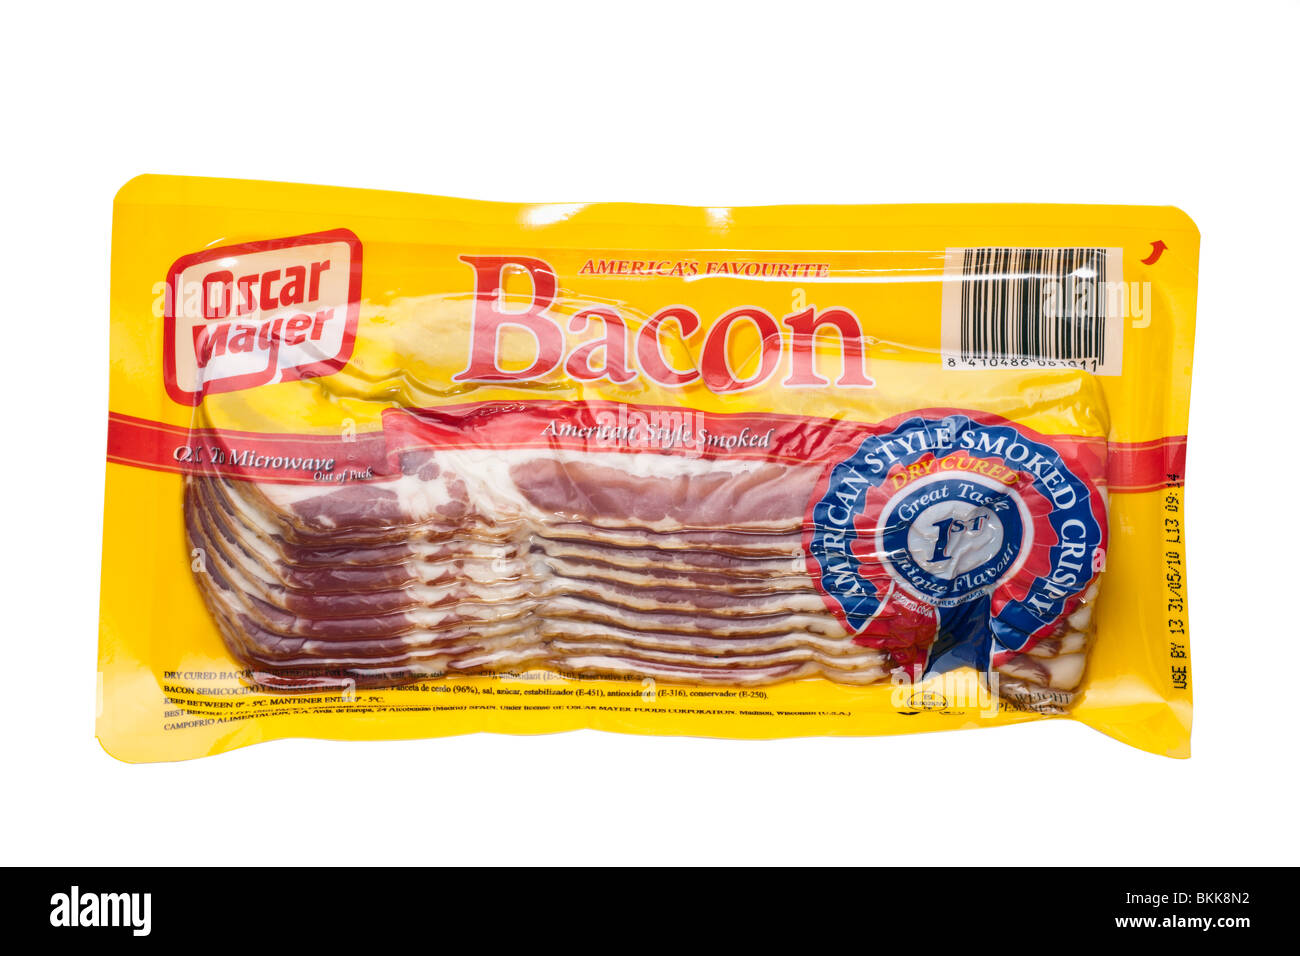 Confezione sigillata di Oscar Mayer stile americano affumicate bacon croccante Foto Stock